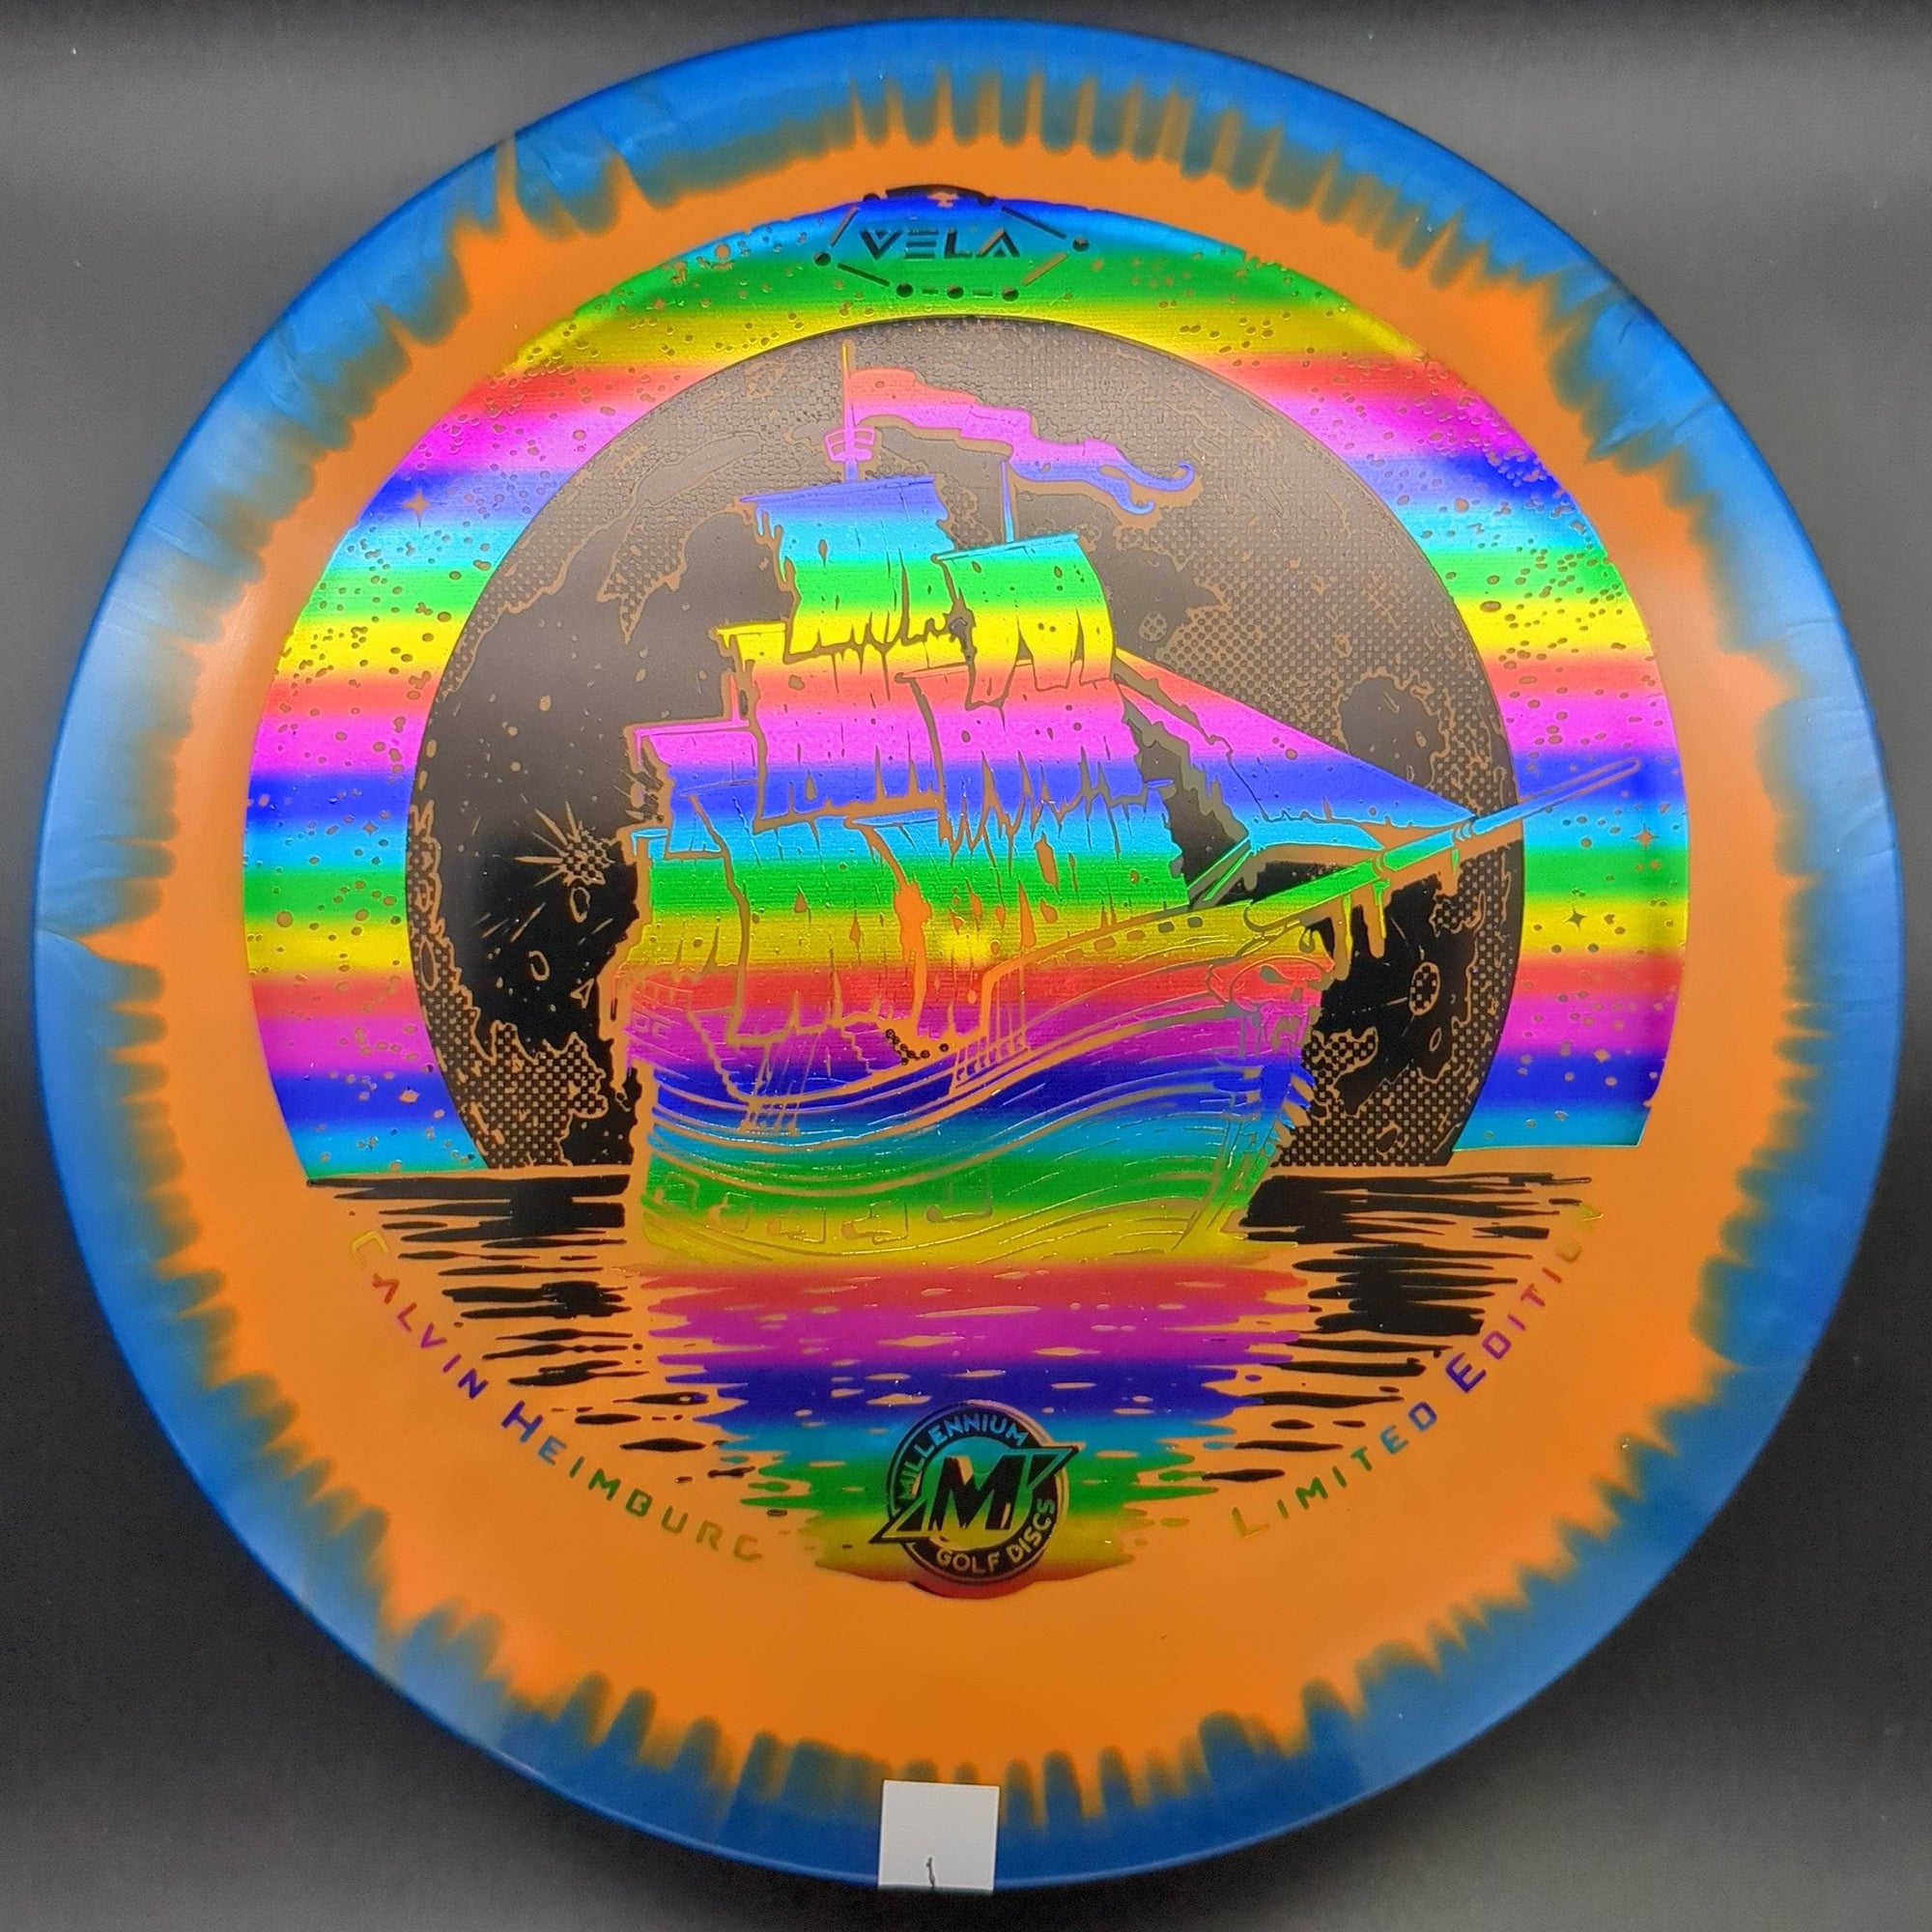 Millennium Discs Fairway Driver Vela, Sirius Helio Plastic - Limited Edition - Calvin Heimburg